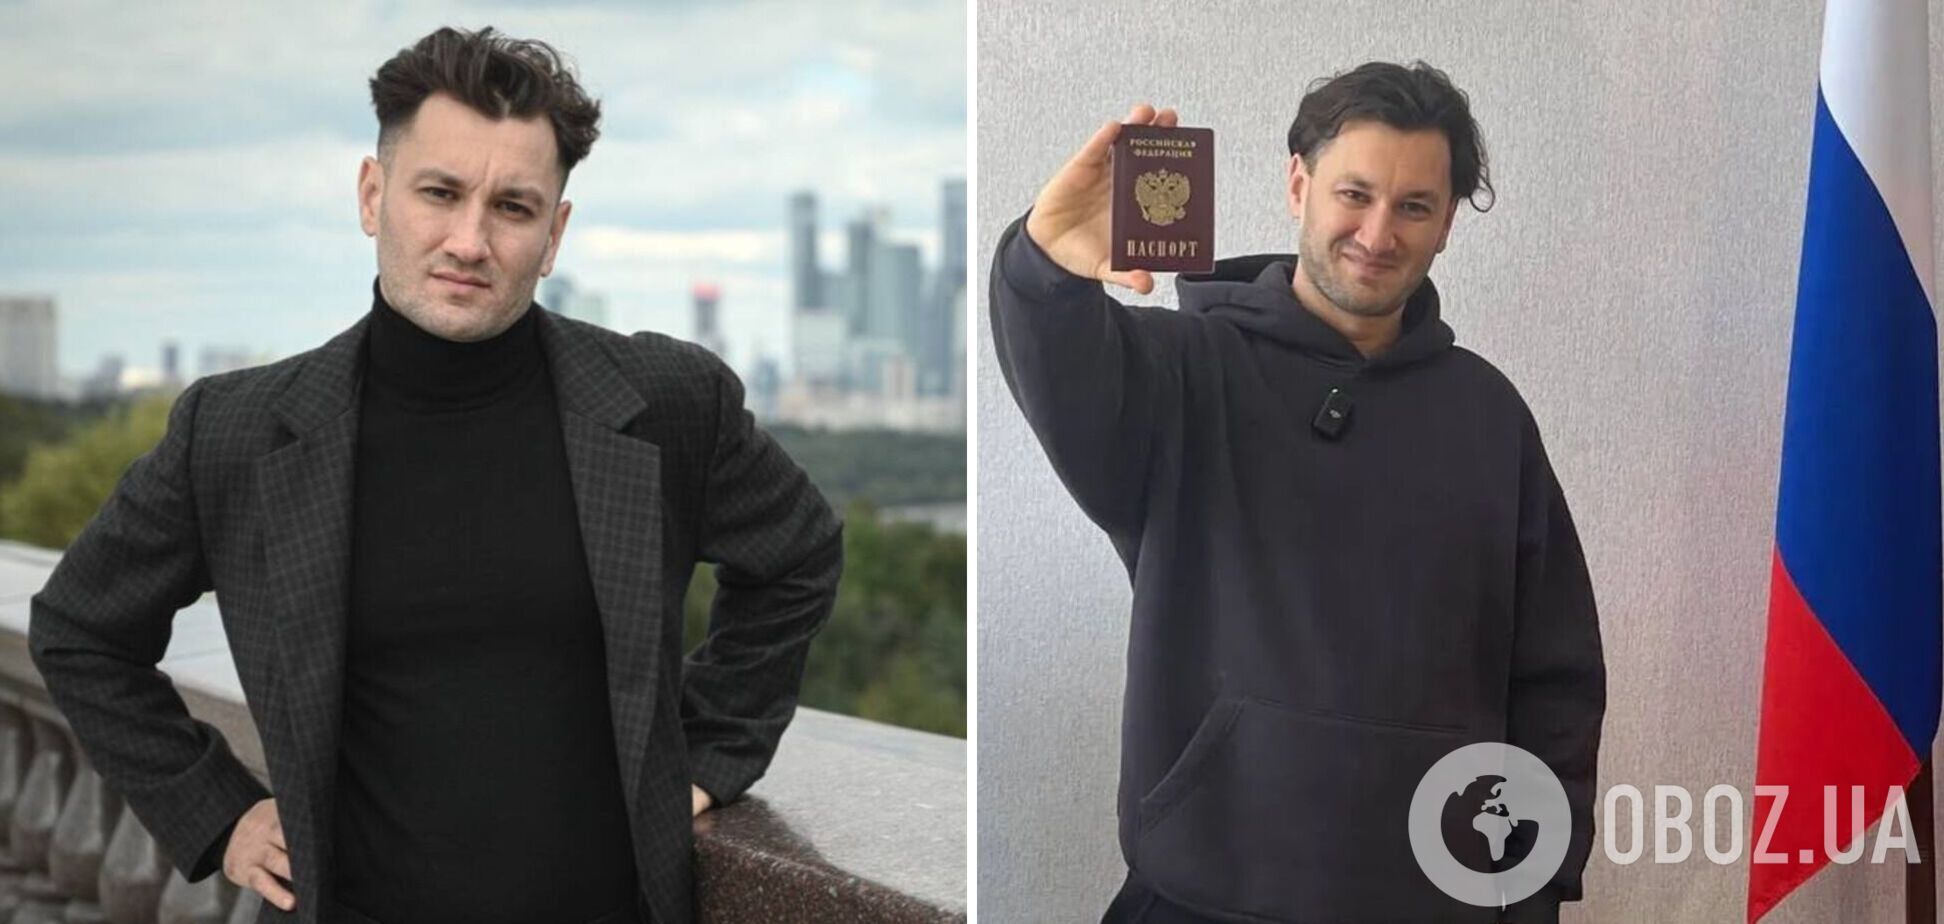 Юрій Бардаш принизив Батьківщину: український паспорт такий же непотрібний, як Україна, але спалювати його не буду